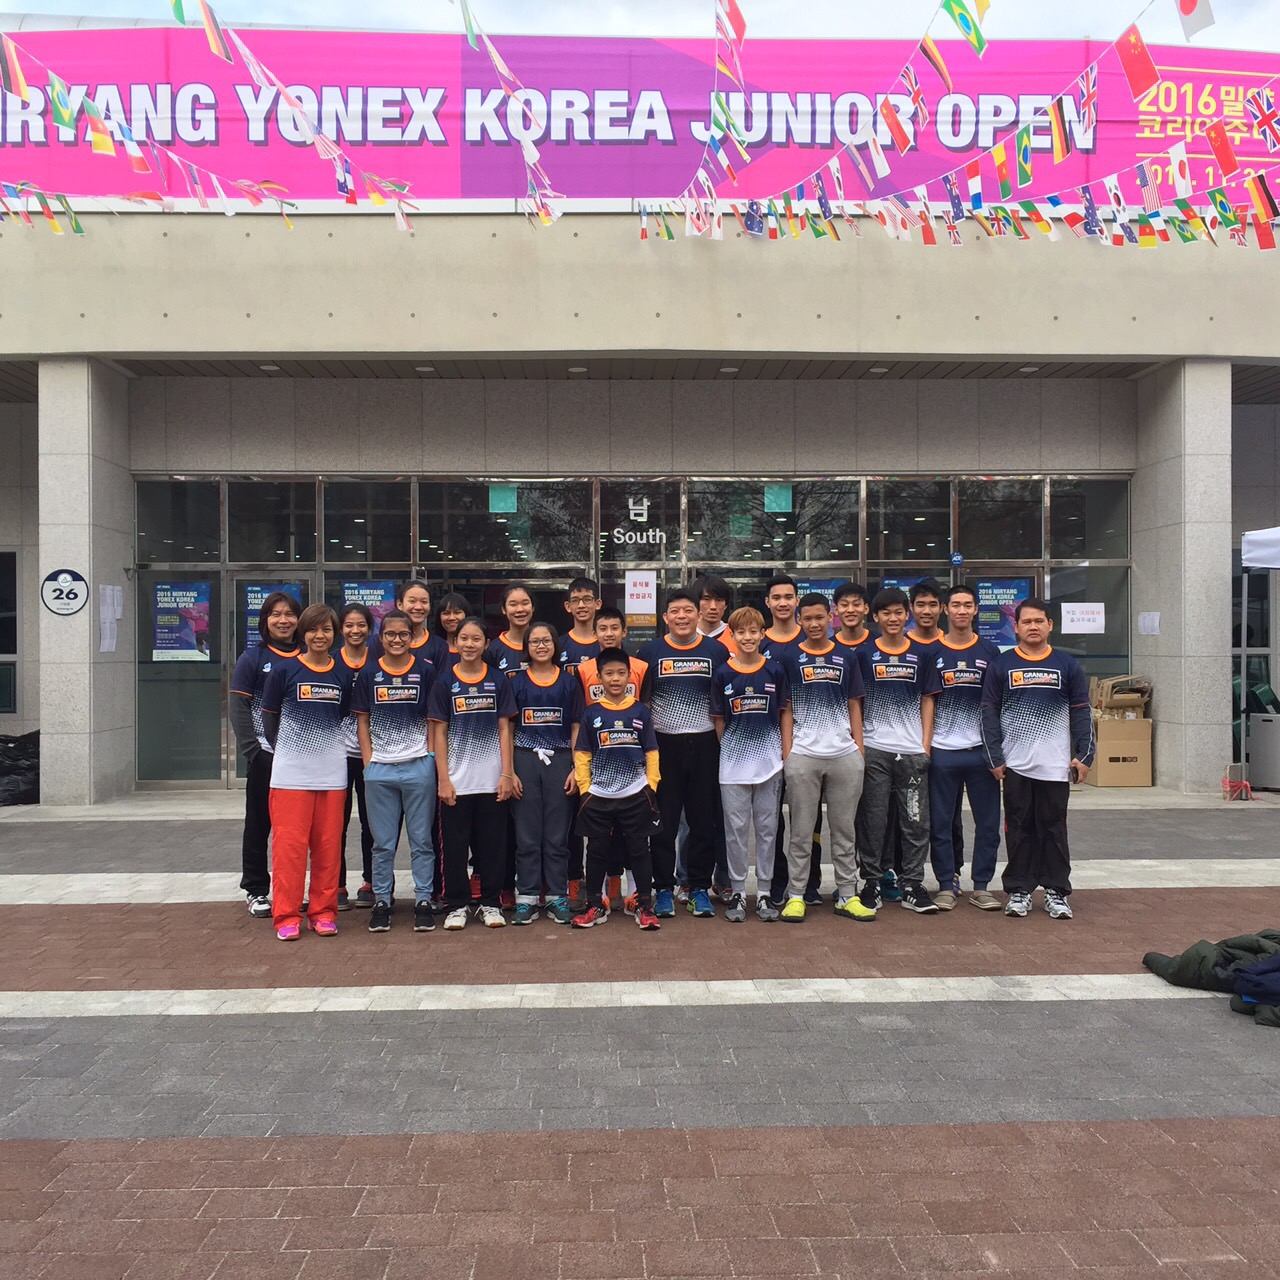 น้องมูนา แพ้ เจ้าภาพ ได้ตำแหน่งรองชนะเลิศเยาวชนที่เกาหลี